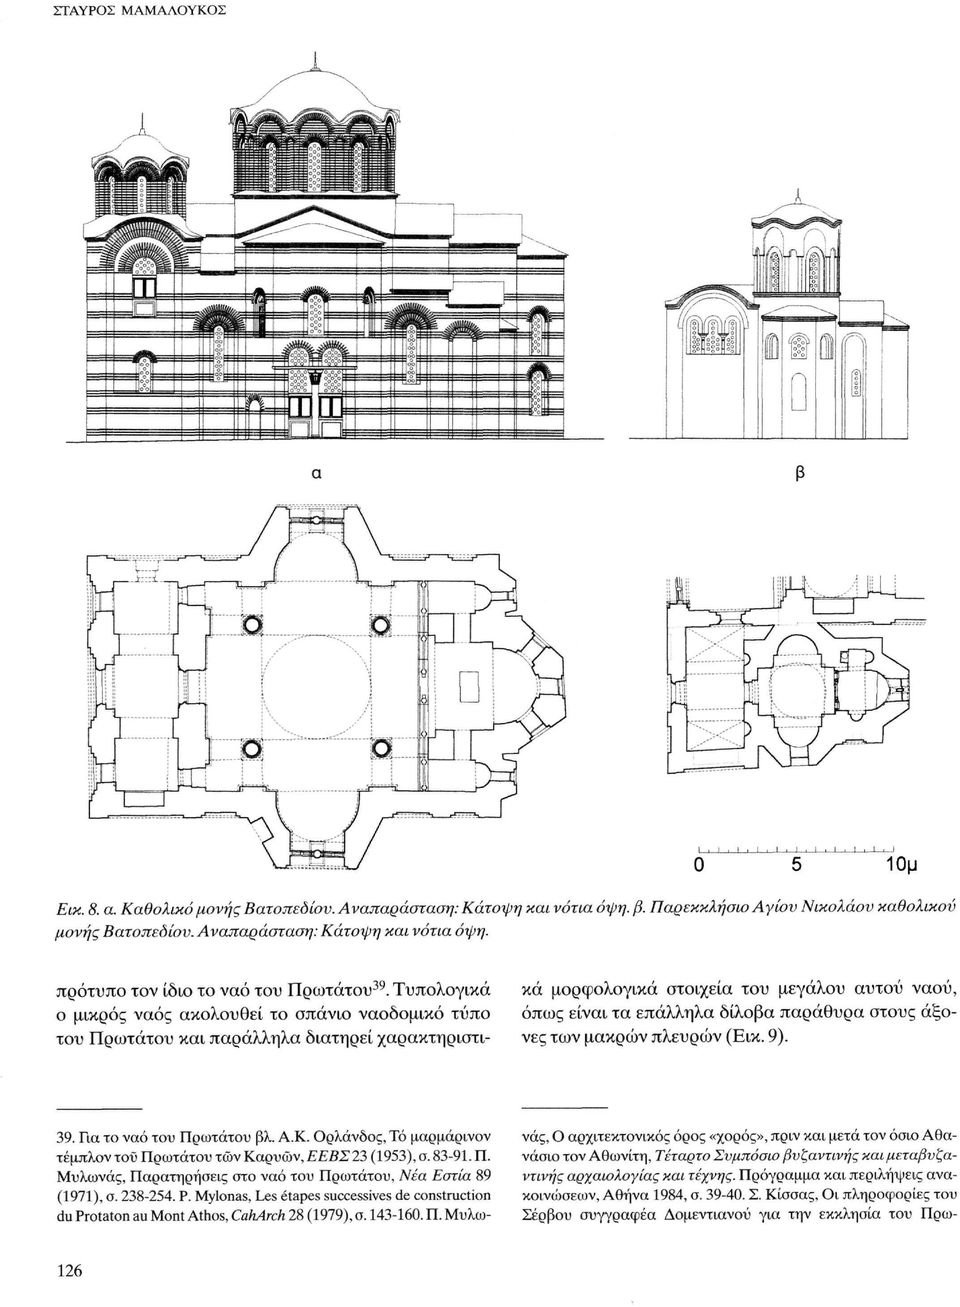 Τυπολογικά ο μικρός ναός ακολουθεί το σπάνιο ναοδομικό τύπο του Πρωτάτου και παράλληλα διατηρεί χαρακτηριστικά μορφολογικά στοιχεία του μεγάλου αυτού ναού, όπως είναι τα επάλληλα δίλοβα παράθυρα